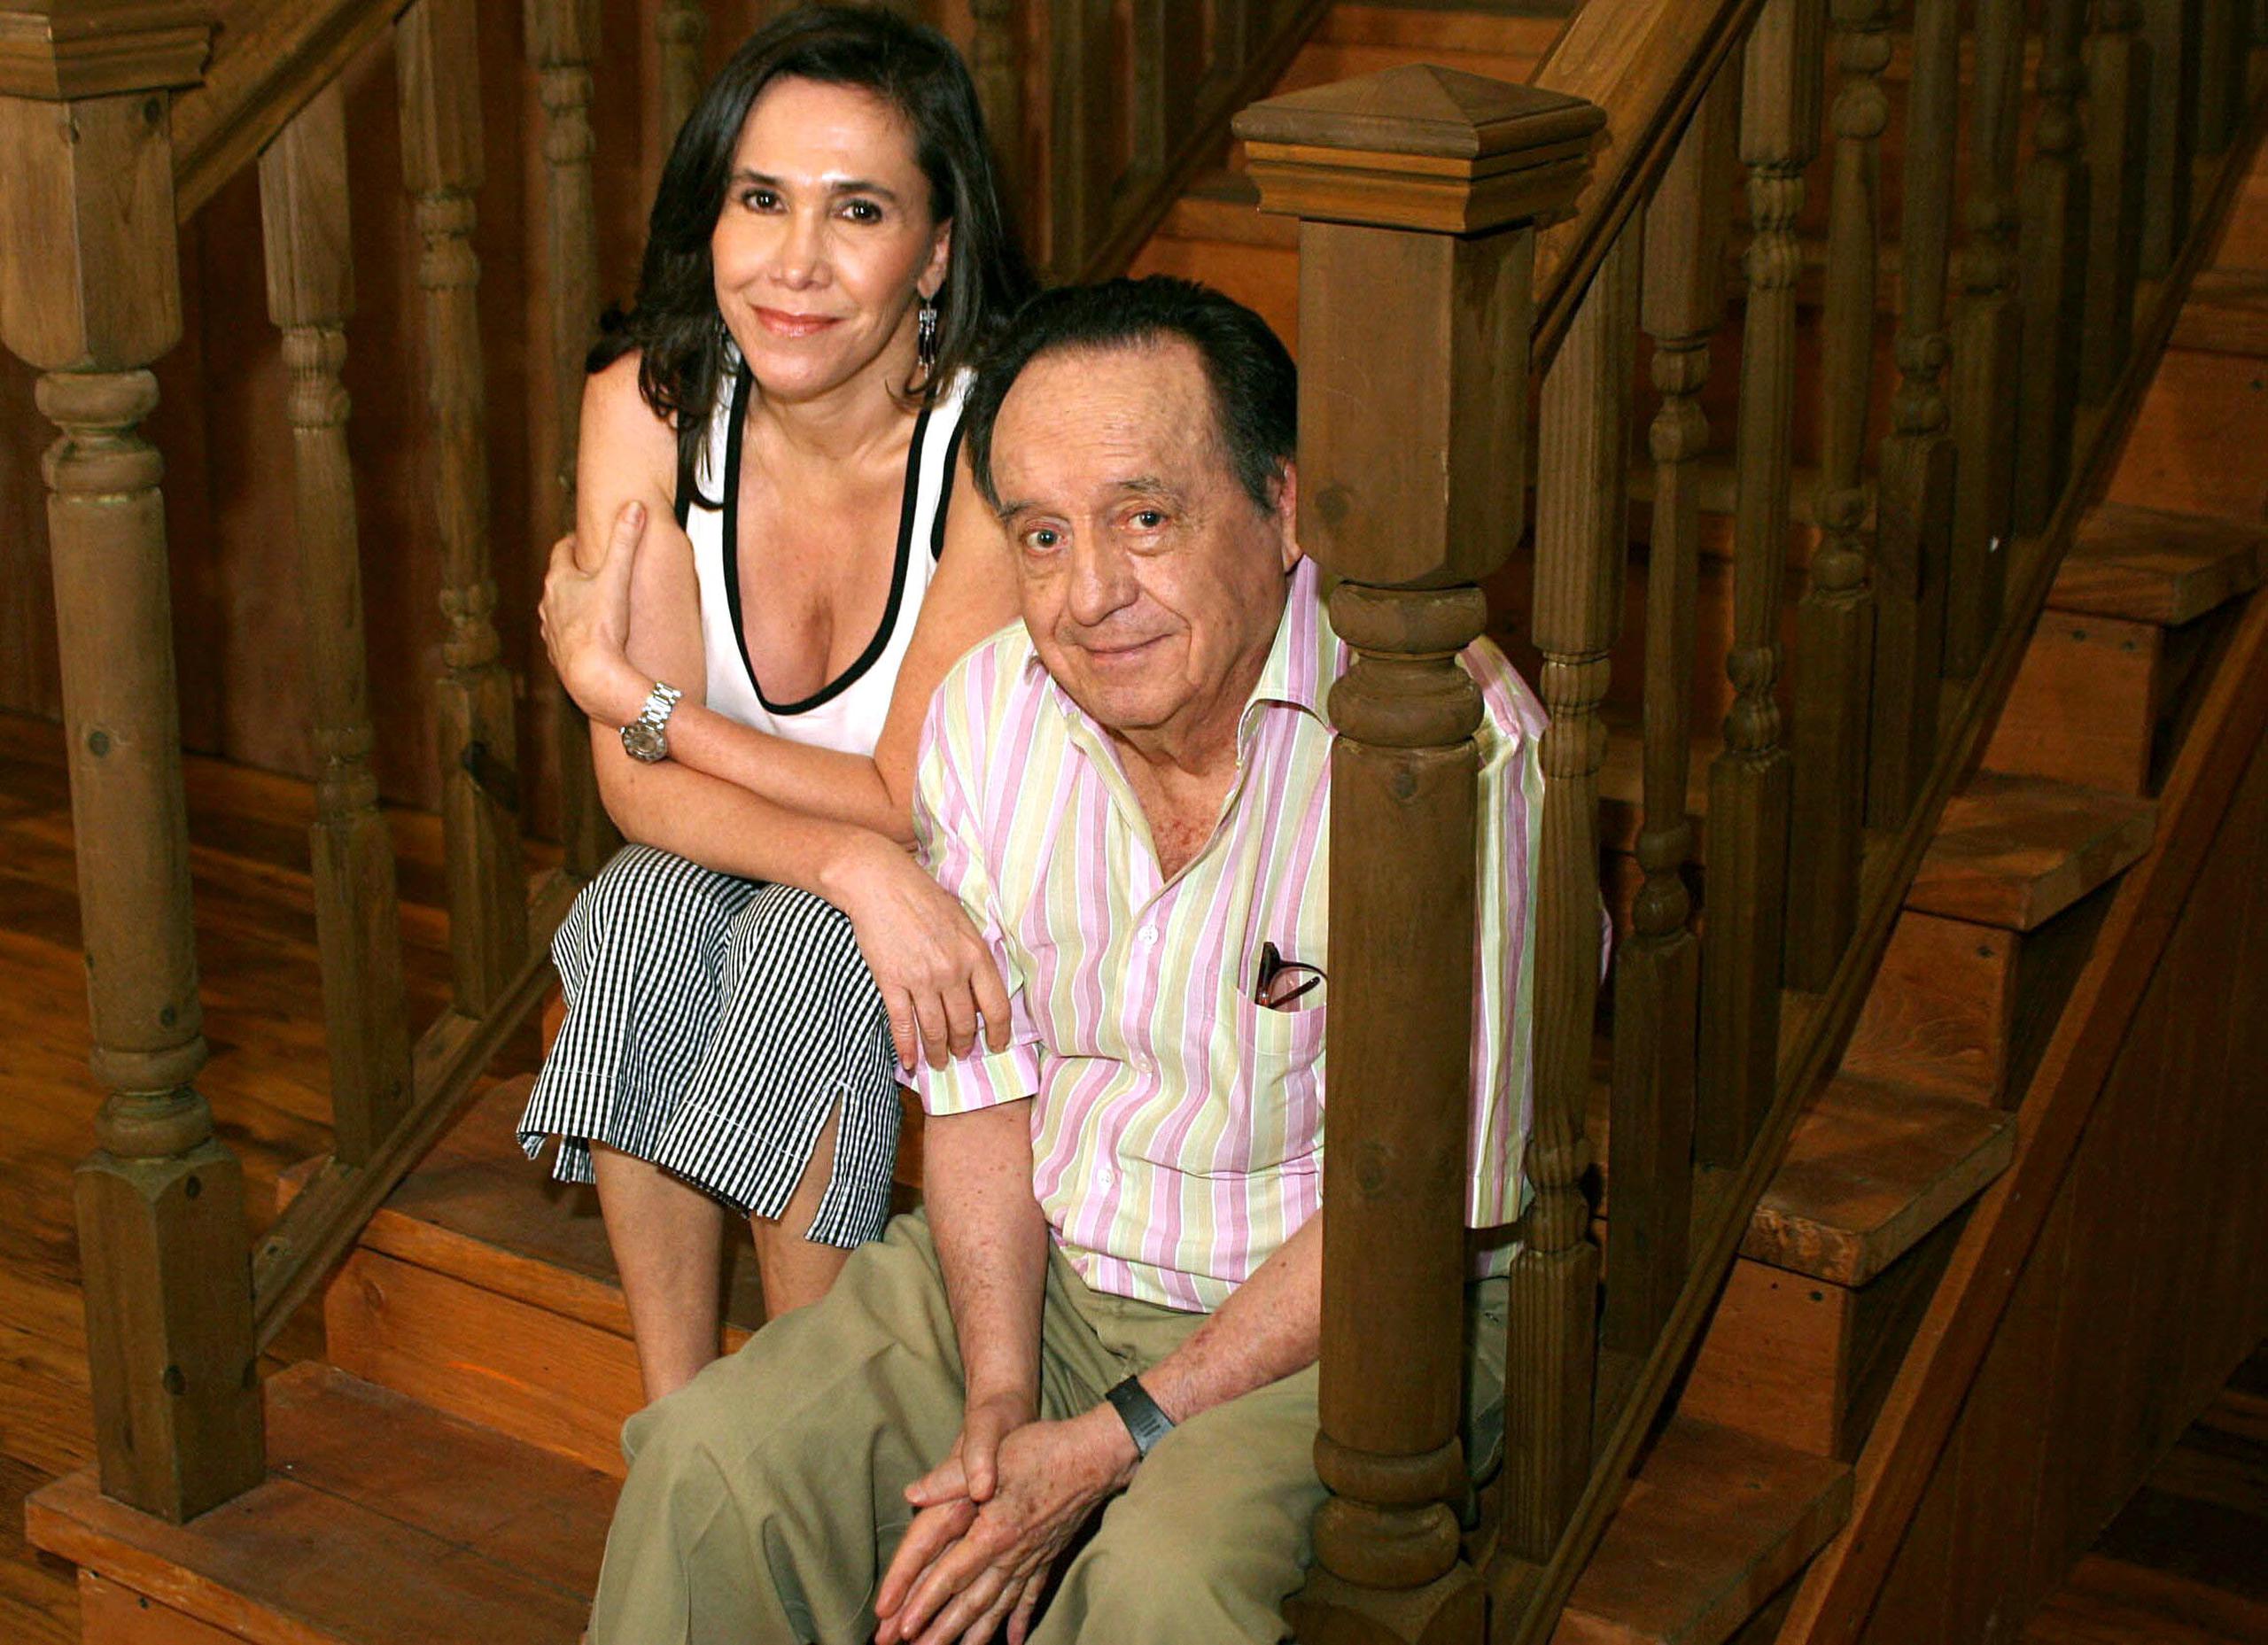 El matrimonio de actores mexicanos Roberto Gómez Bolaños y Florinda Meza durante la promoción del libro "El diario del Chavo del ocho" en Miami el 23 de septiembre de 2005.